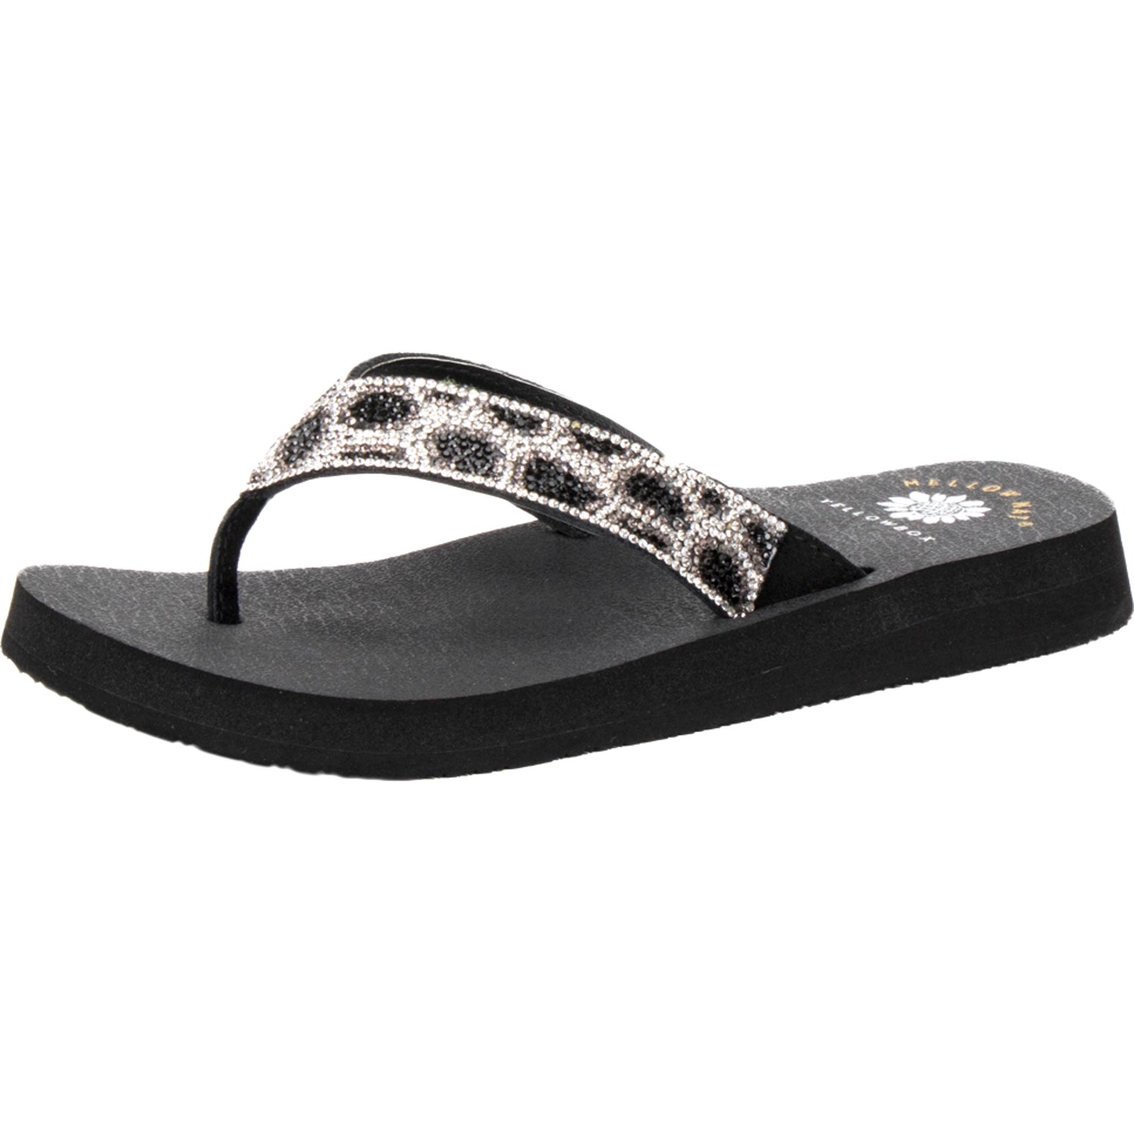 Yellow Box Naseeba Leopard Design Bling Flip Flop Sandals | Flip Flops ...